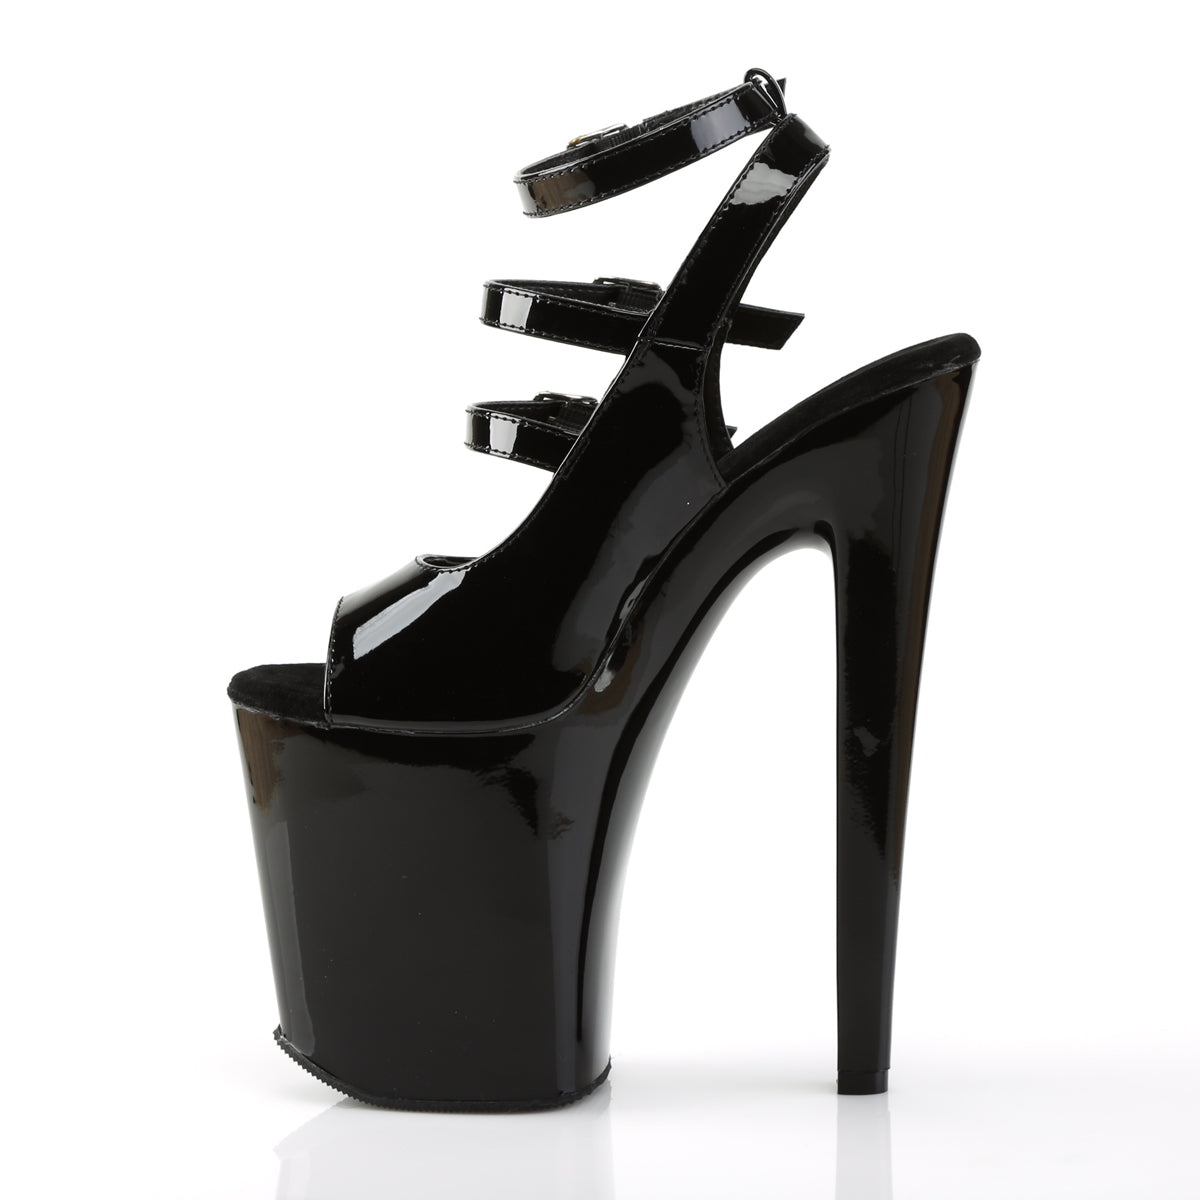 Pleaser Womens Sandals XTREME-873 Blk Pat/Blk